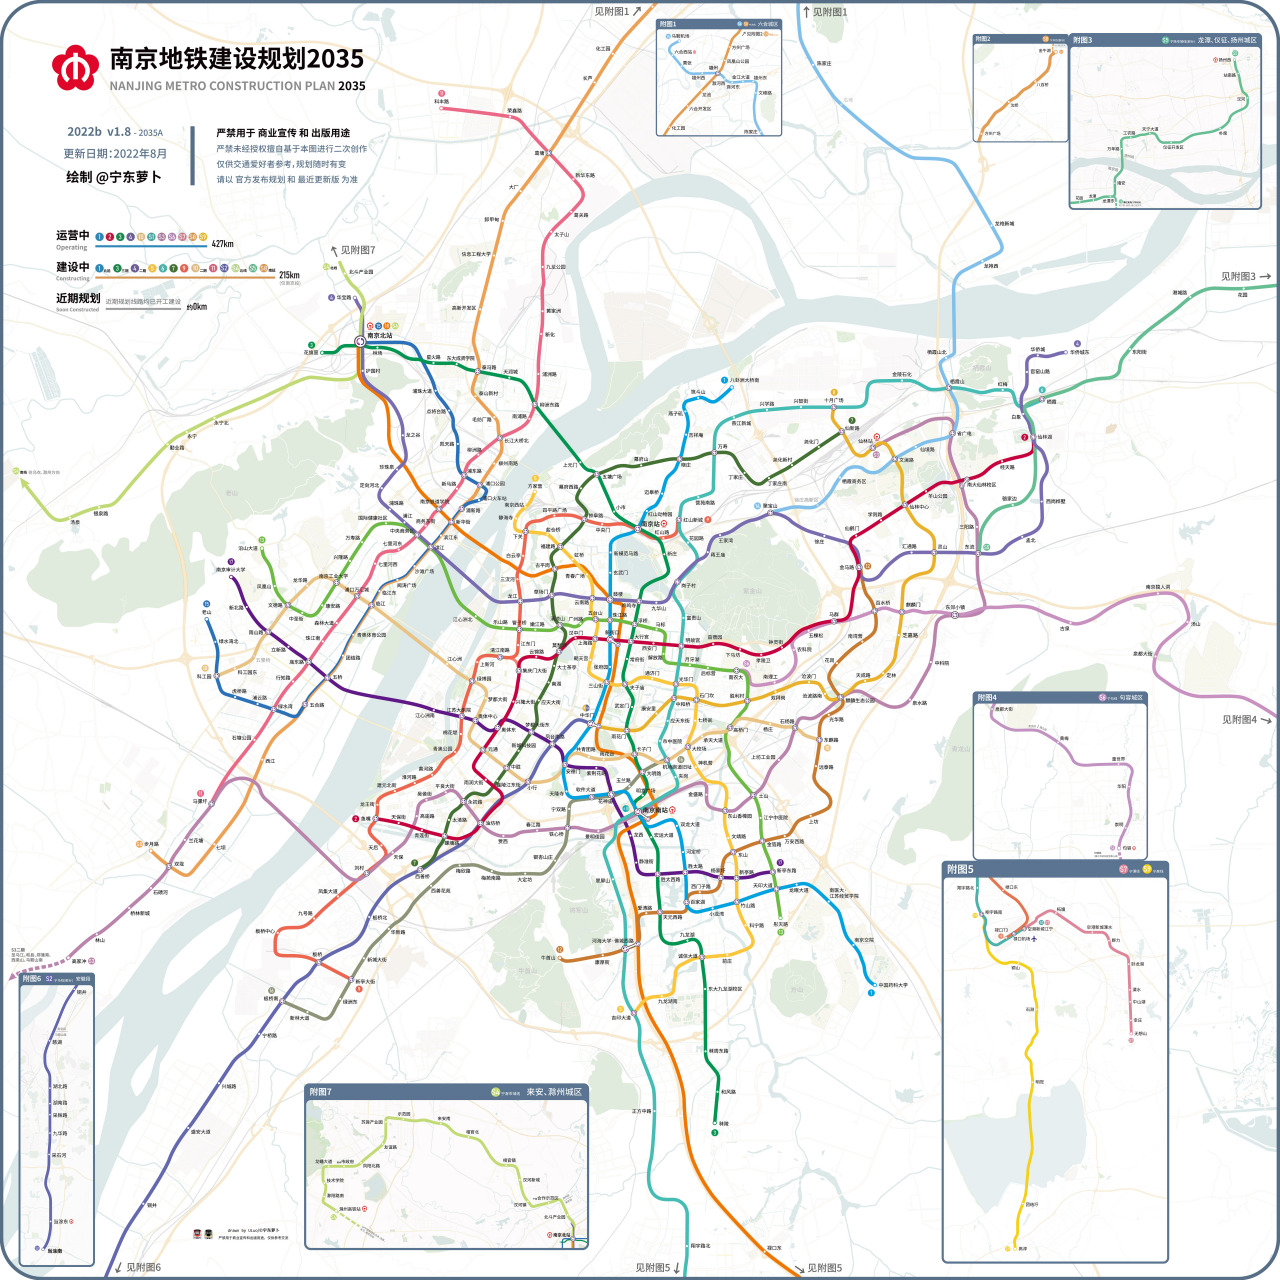 南京地铁建设规划2035线路图,供参考